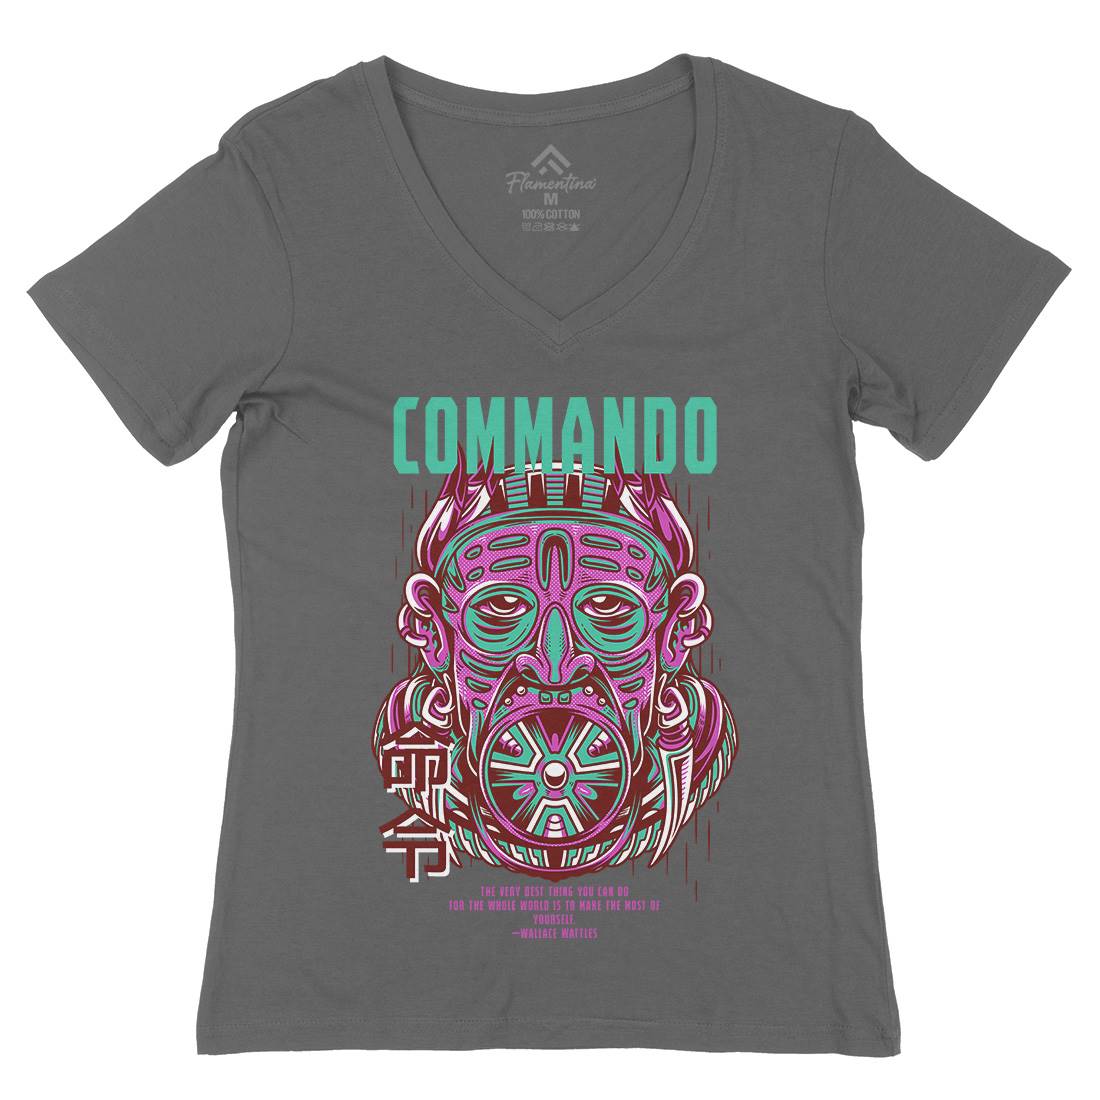 Commando Womens Organic V-Neck T-Shirt Army D731